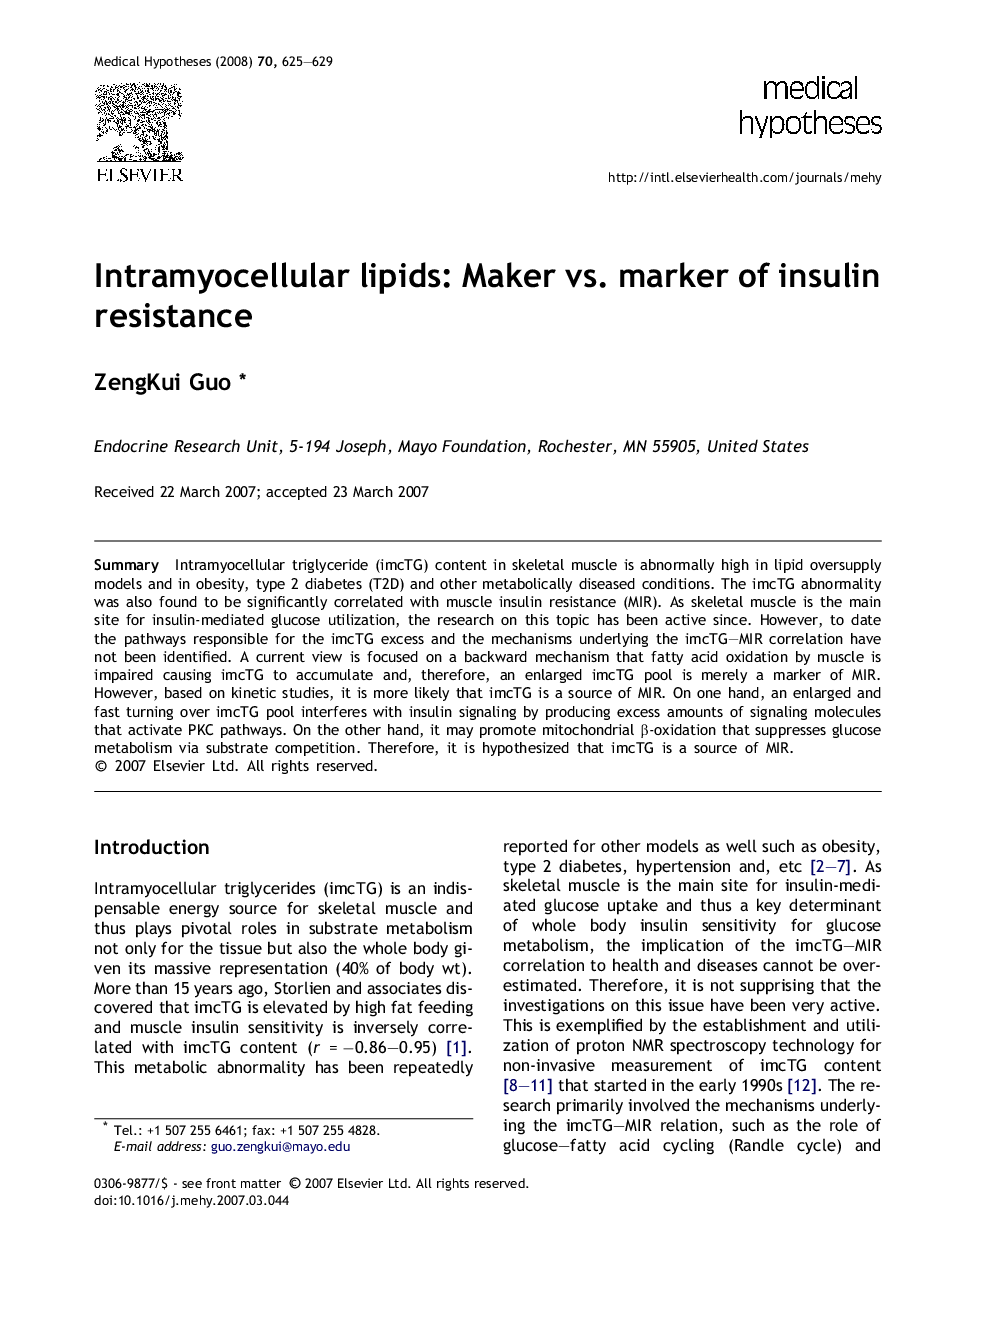 Intramyocellular lipids: Maker vs. marker of insulin resistance